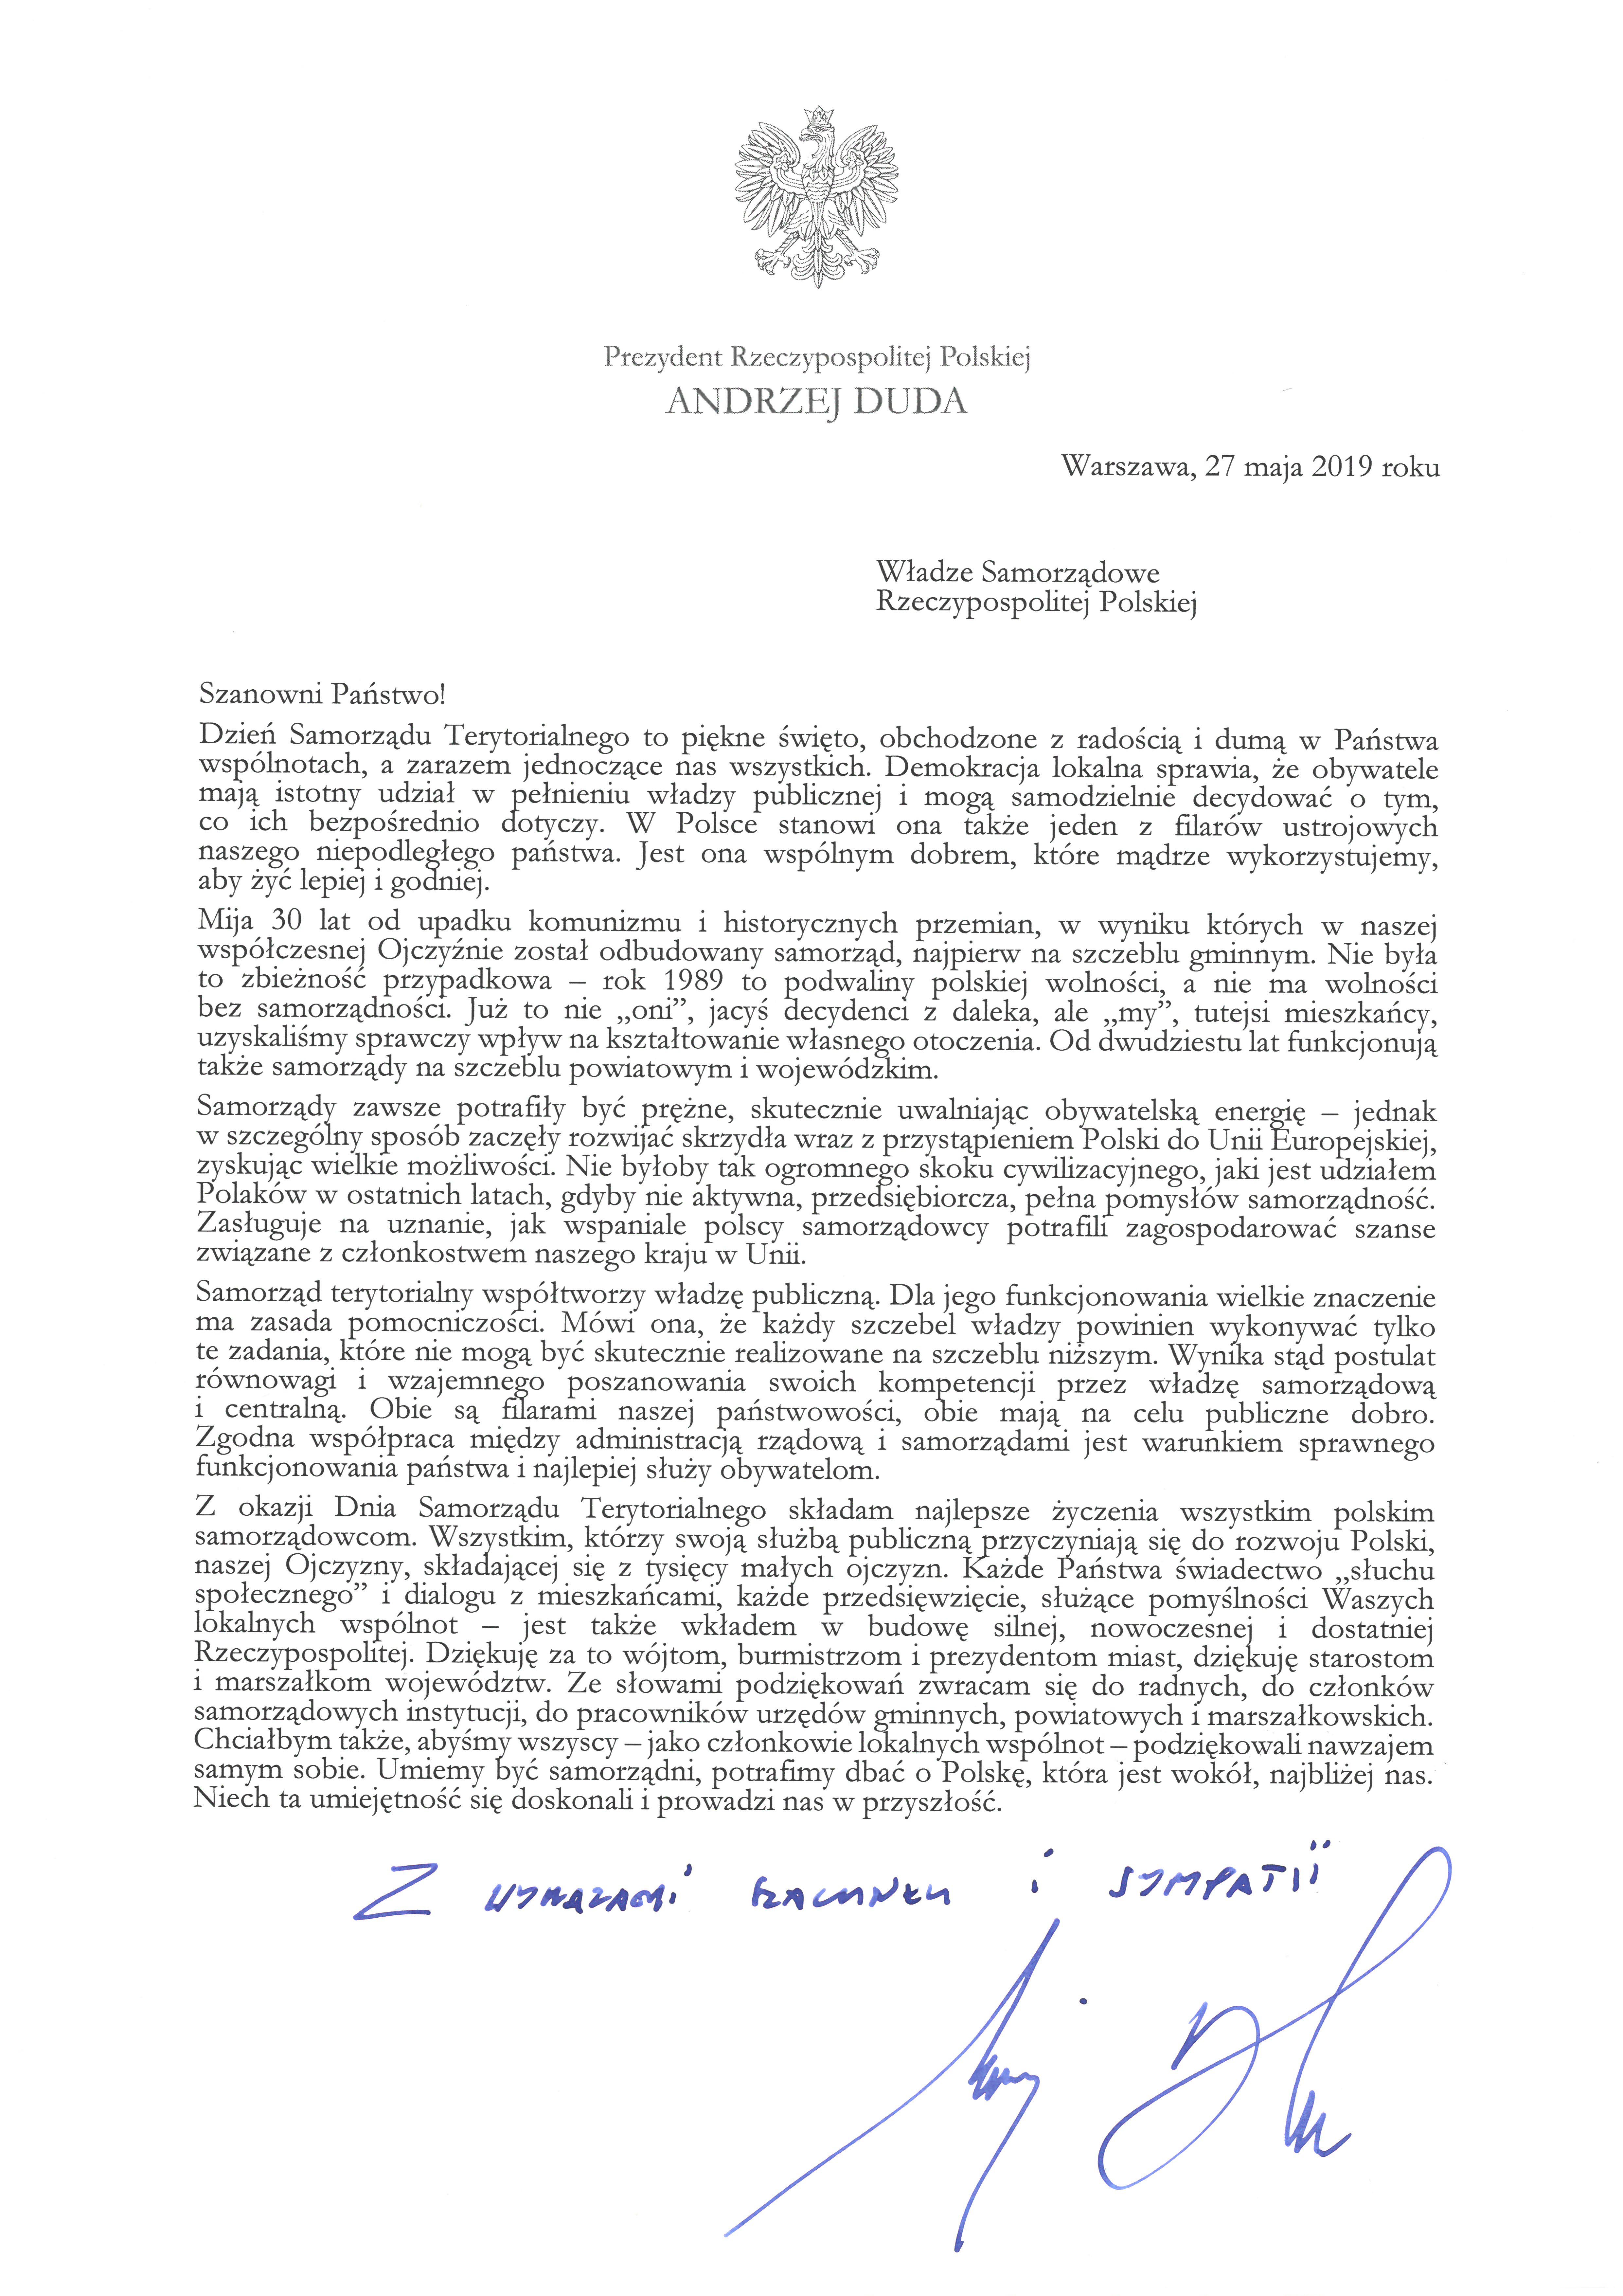 List Prezydenta Rzeczypospolitej Polskiej do Wadz Samorzdowych RP